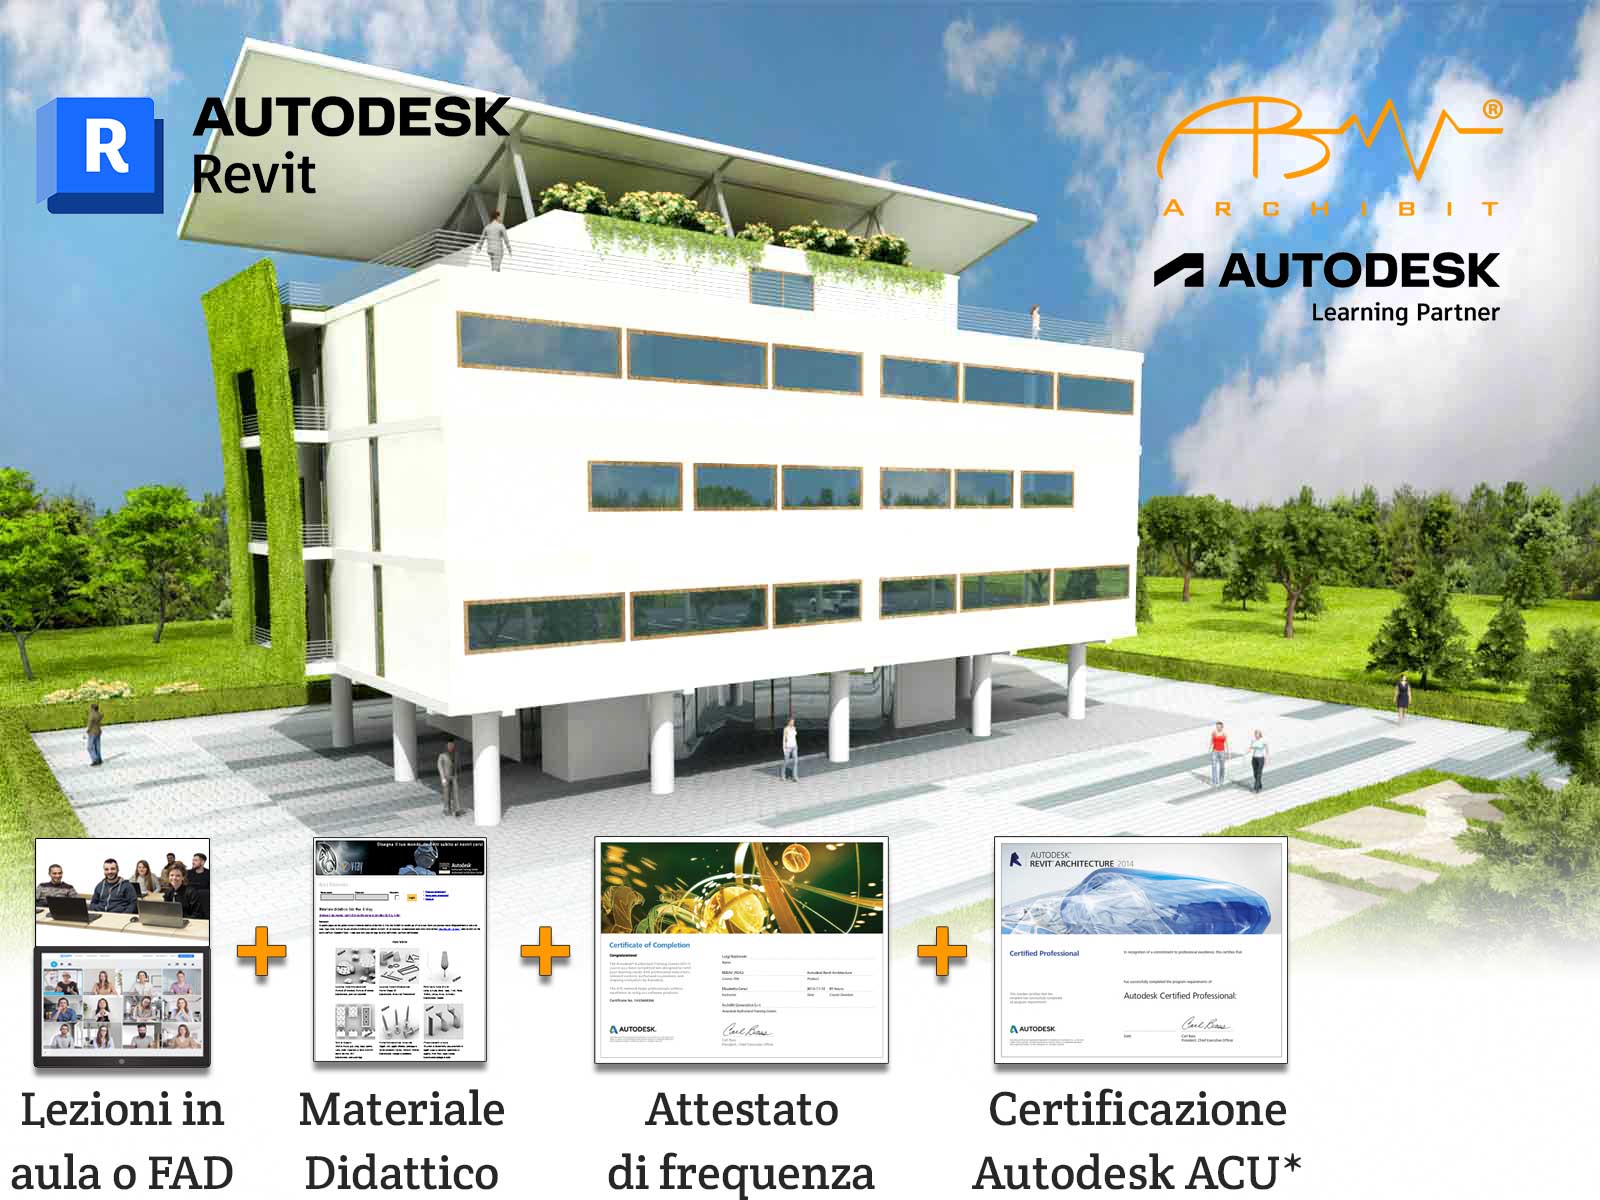 corso-revit-completo-certificazione-professional-autodesk-bim-specialist-roma